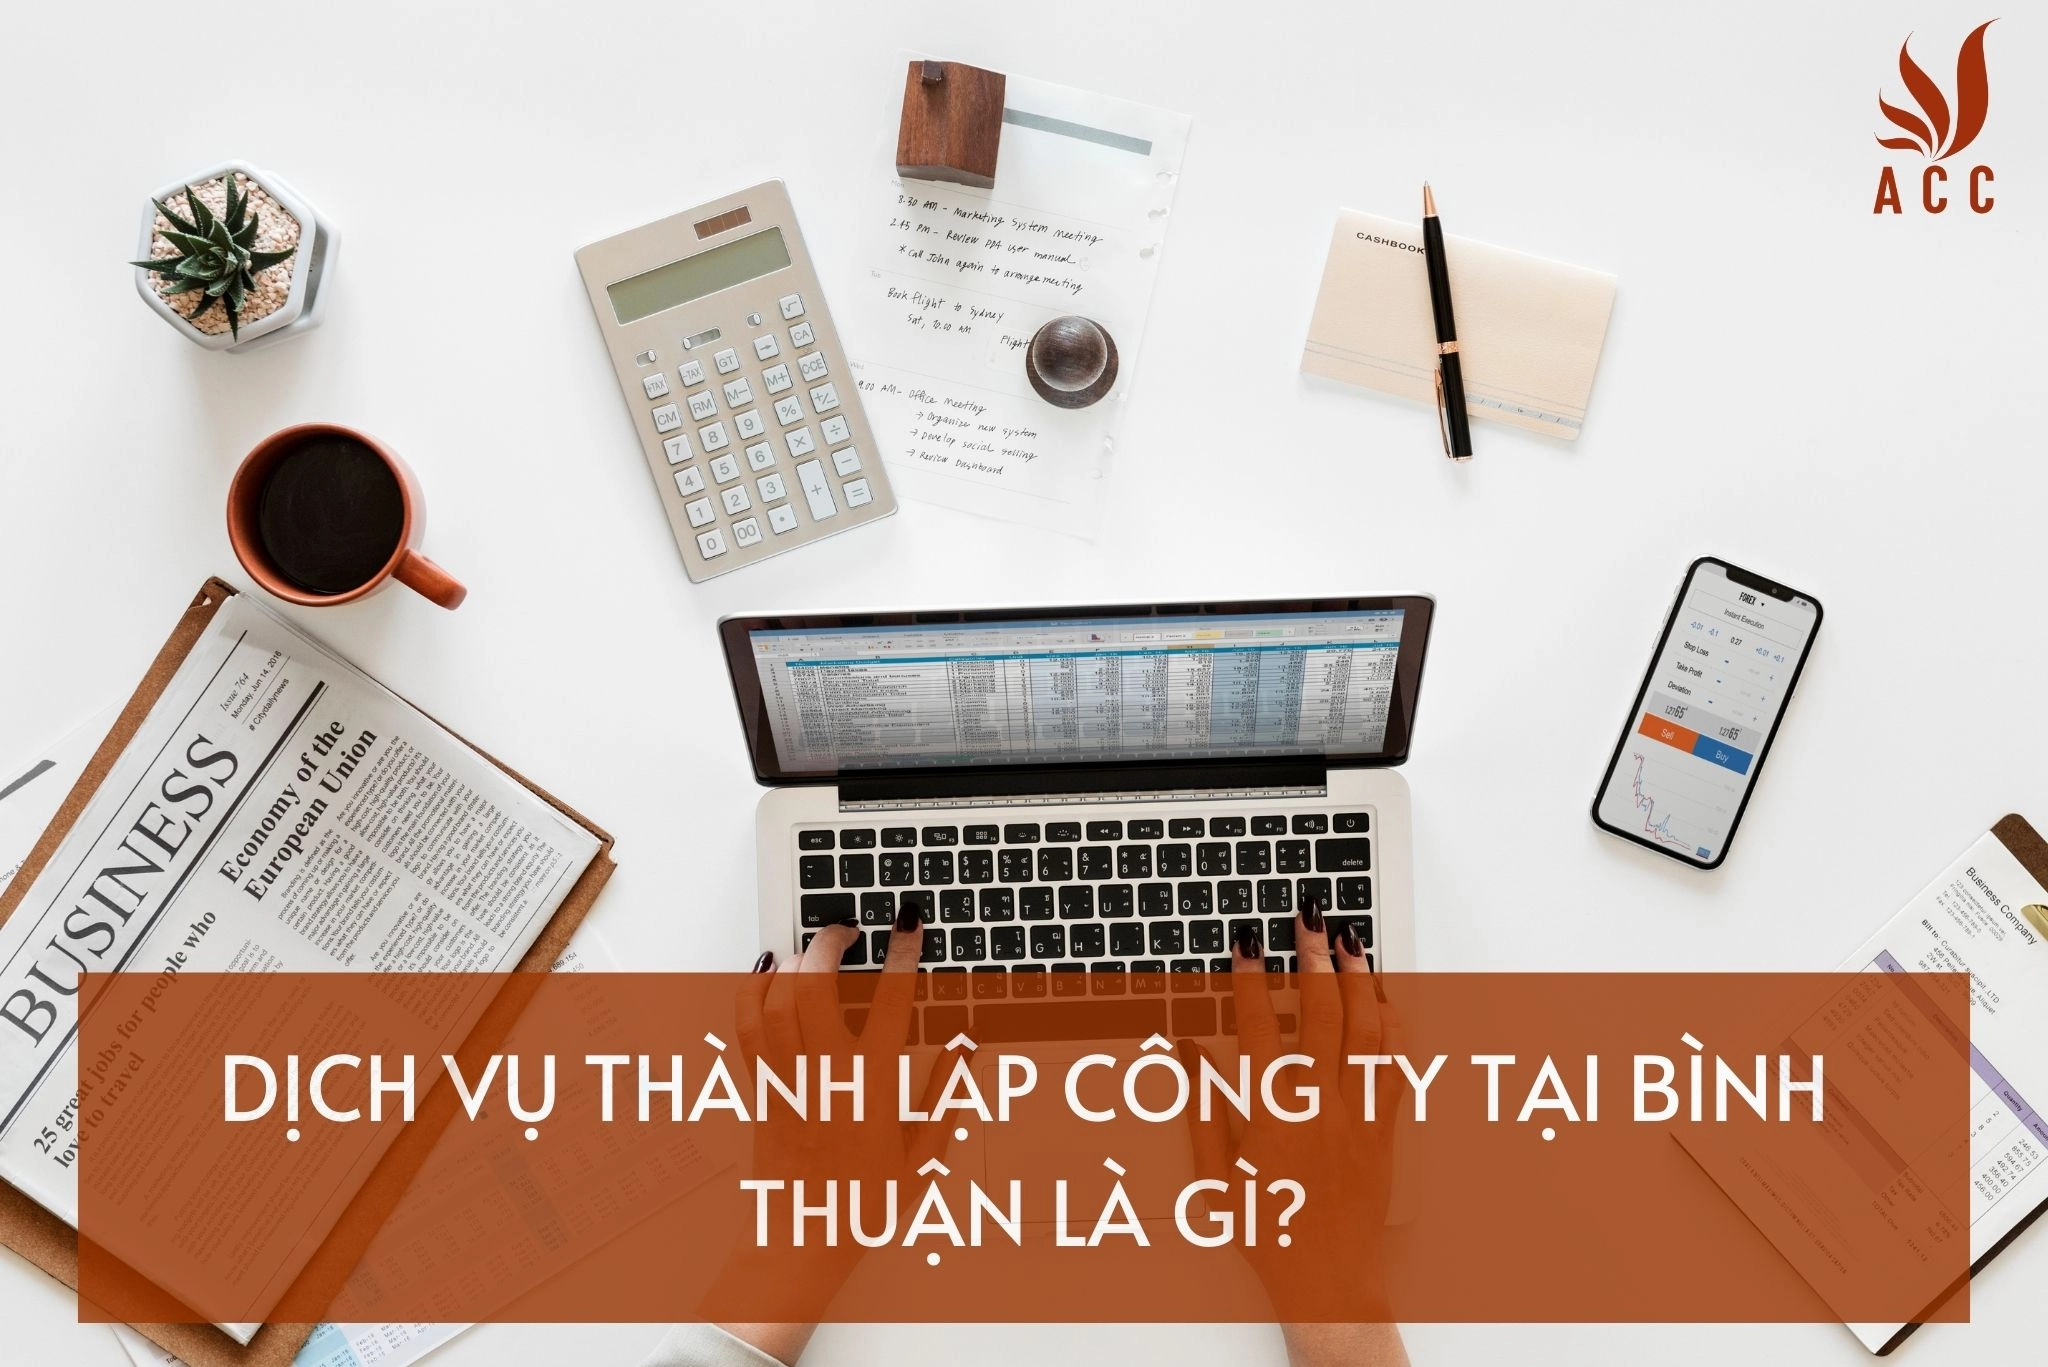 Dịch vụ thành lập công ty tại Bình Thuận là gì